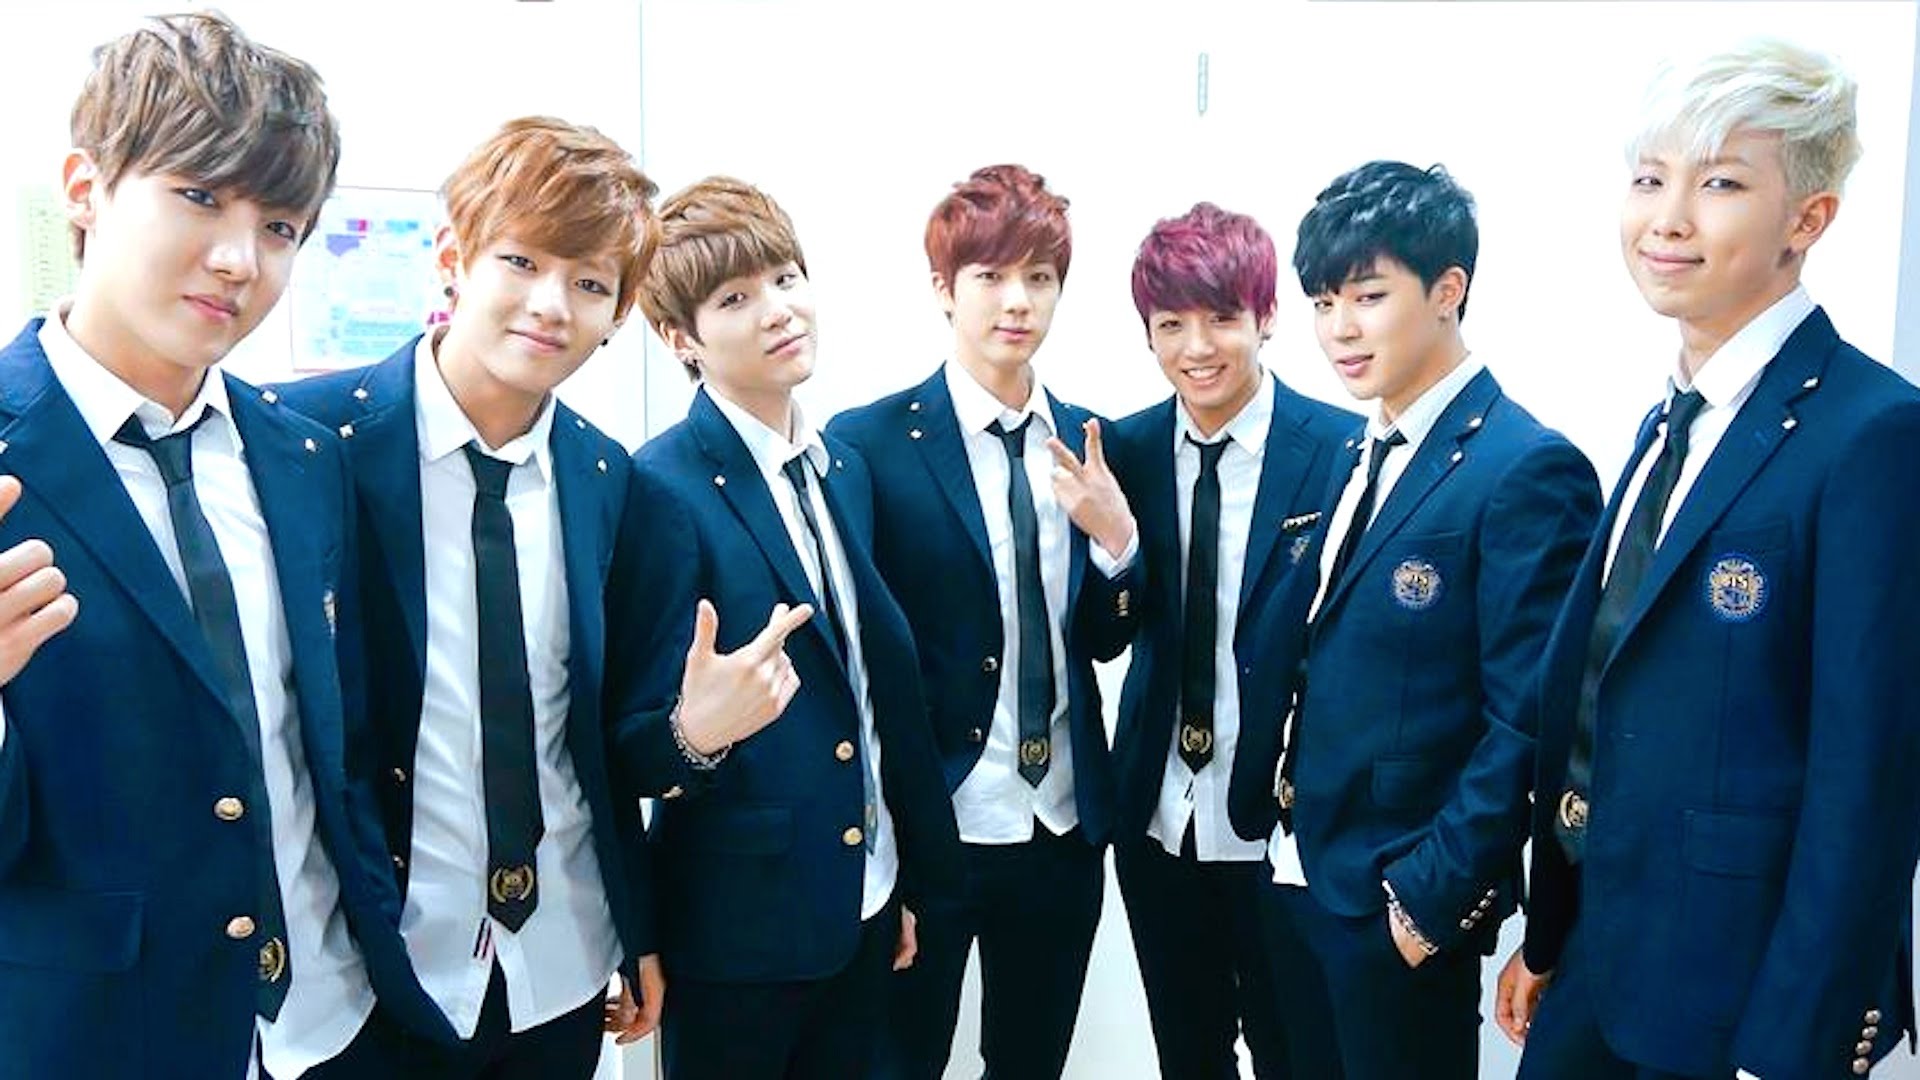 Música | Grupo sul-coreano chega ao topo de vendas nos Estados Unidos